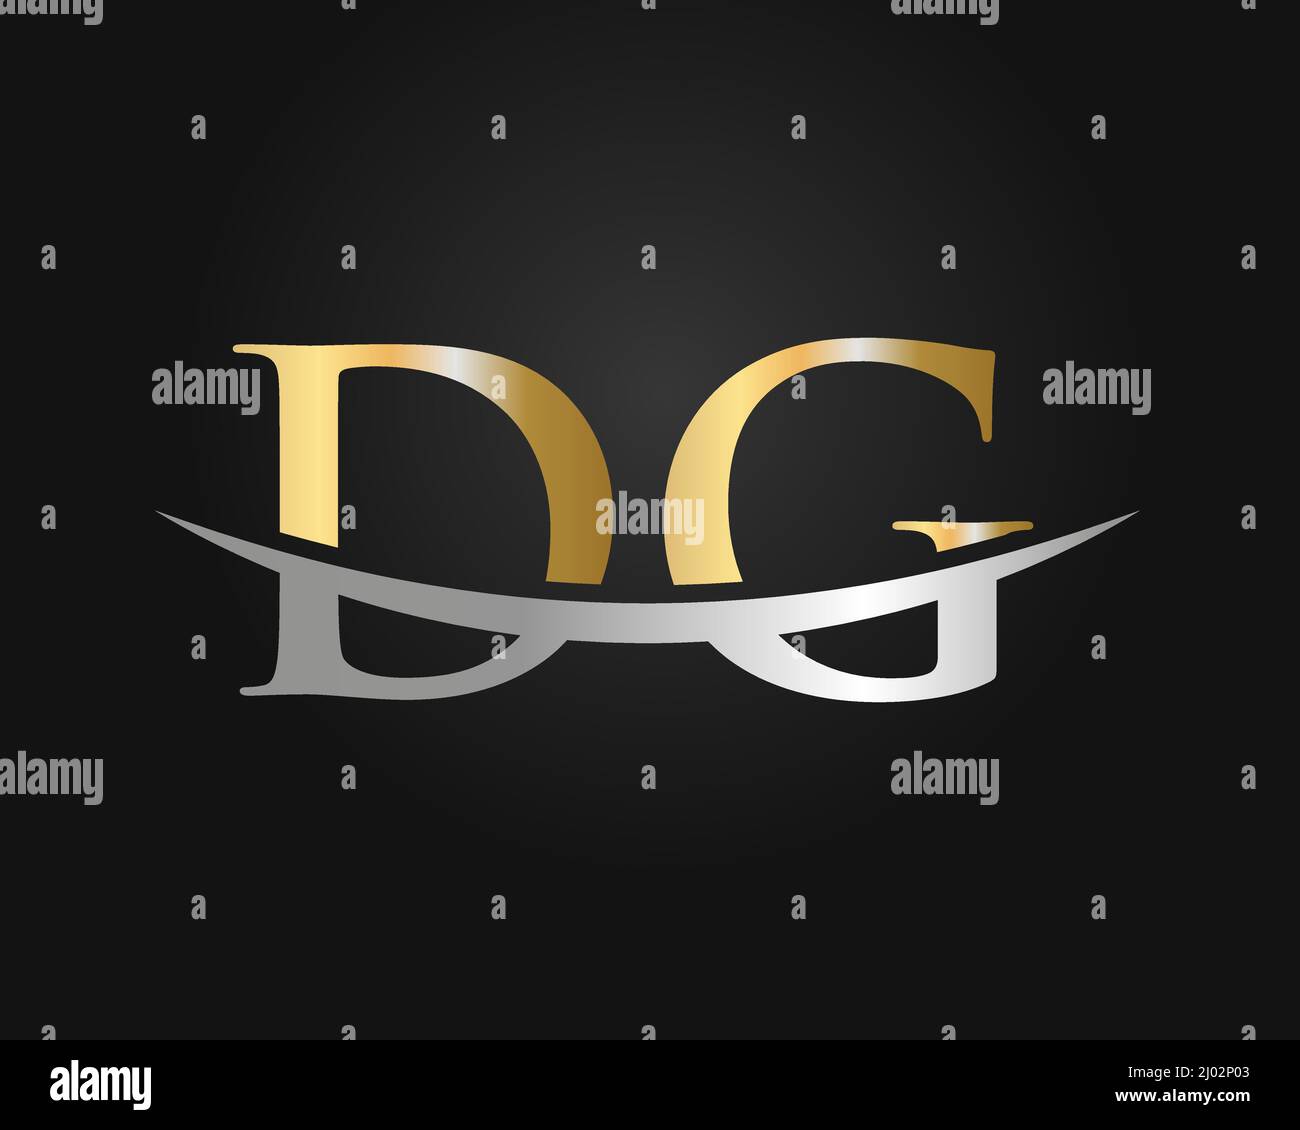 Initial Monogram Letter DG Logo Design Vector. DG Logo Design Template Stock Vector